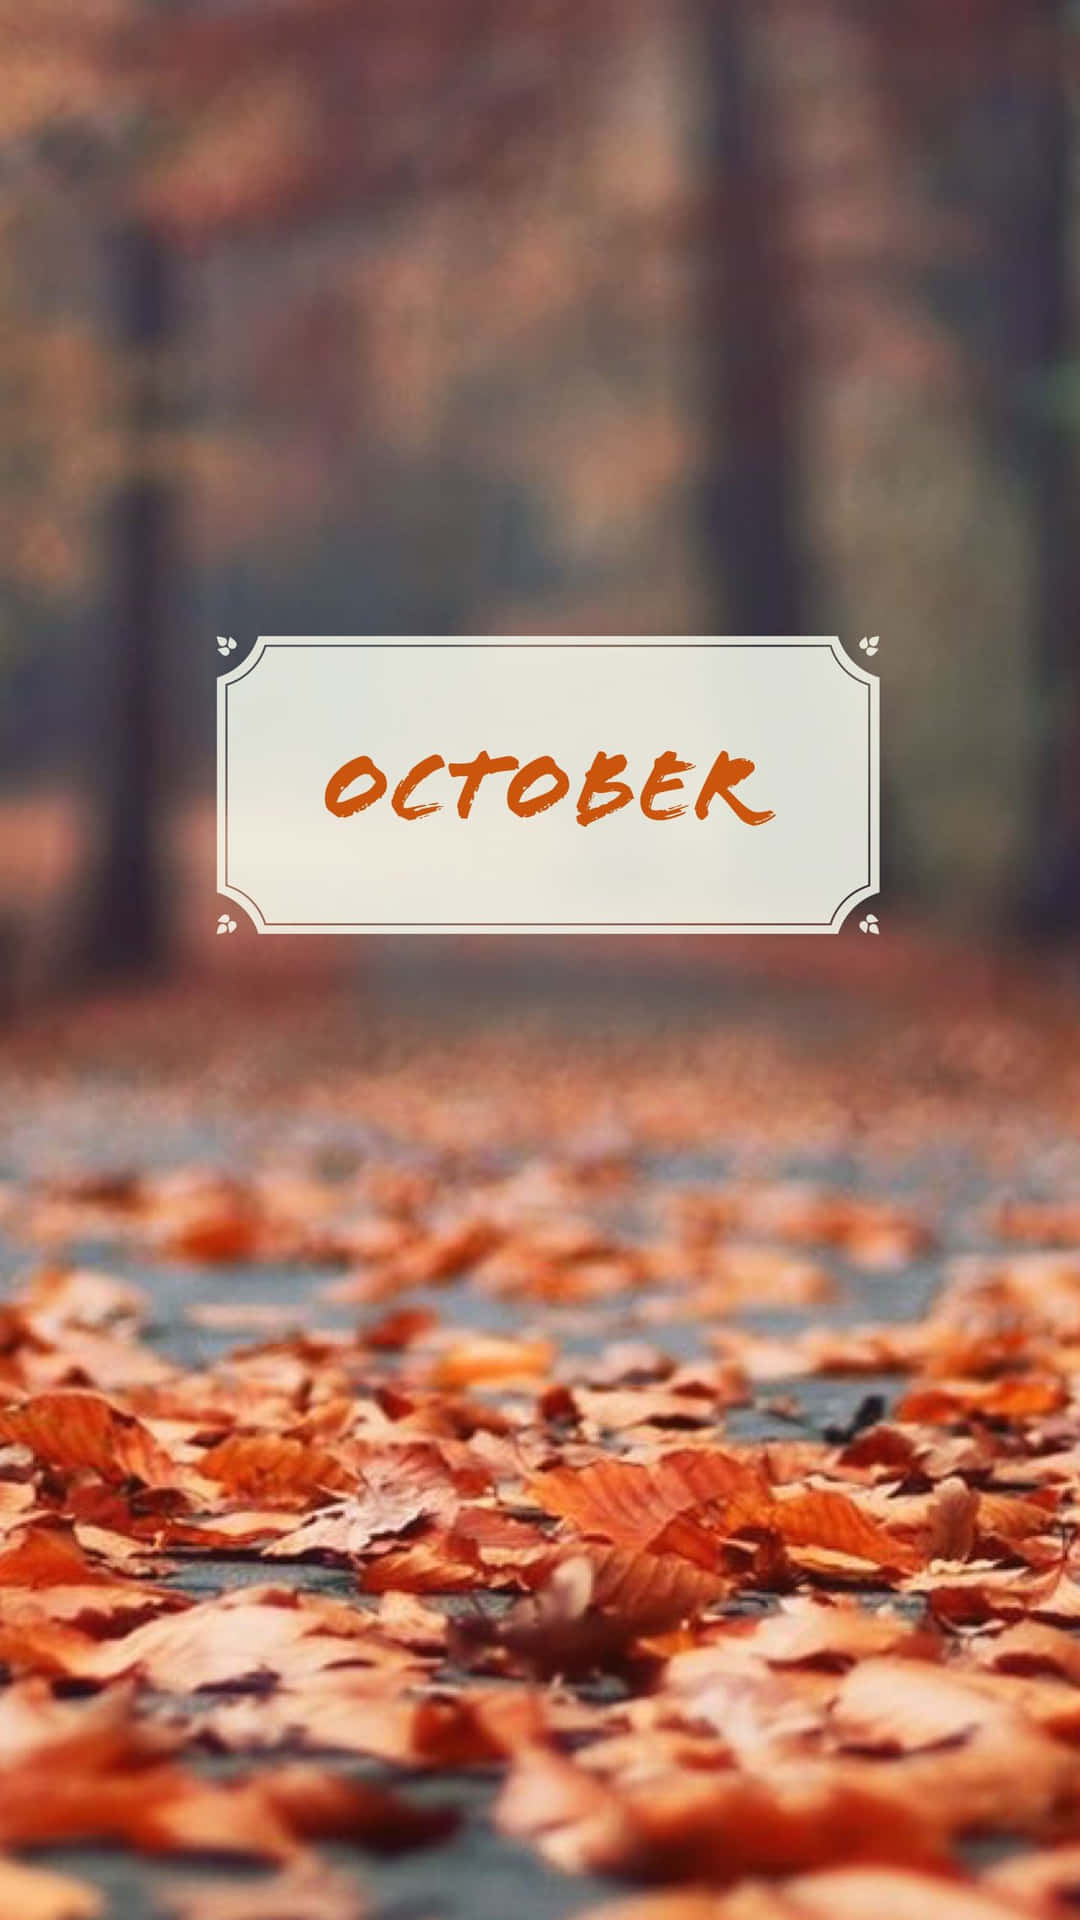 Oktober Æstetisk 1440 X 2560 Wallpaper